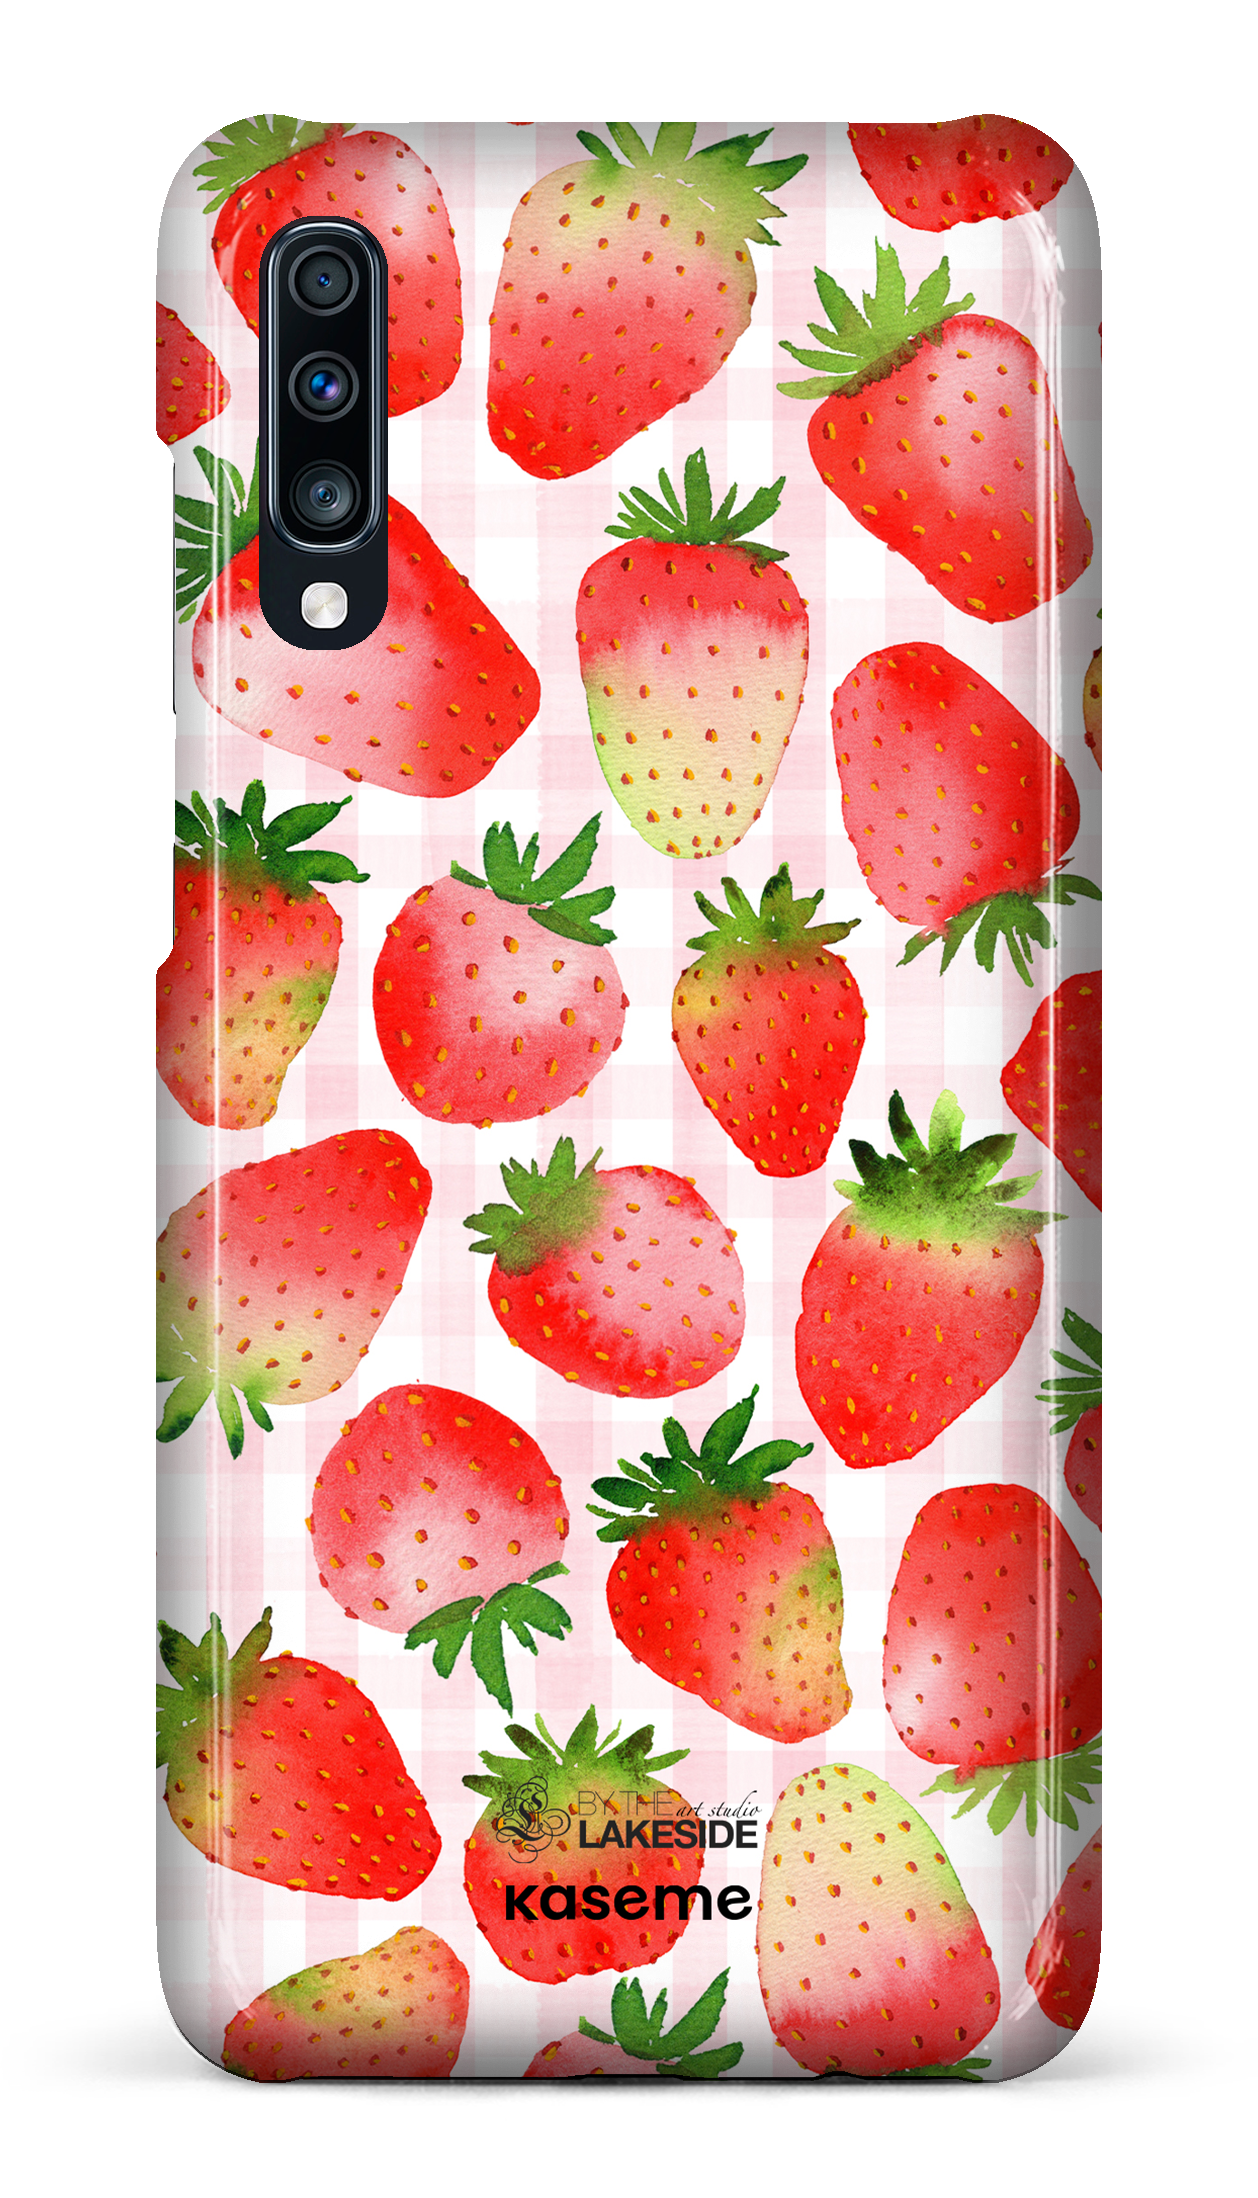 Strawberry Fields by Pooja Umrani - Galaxy A70